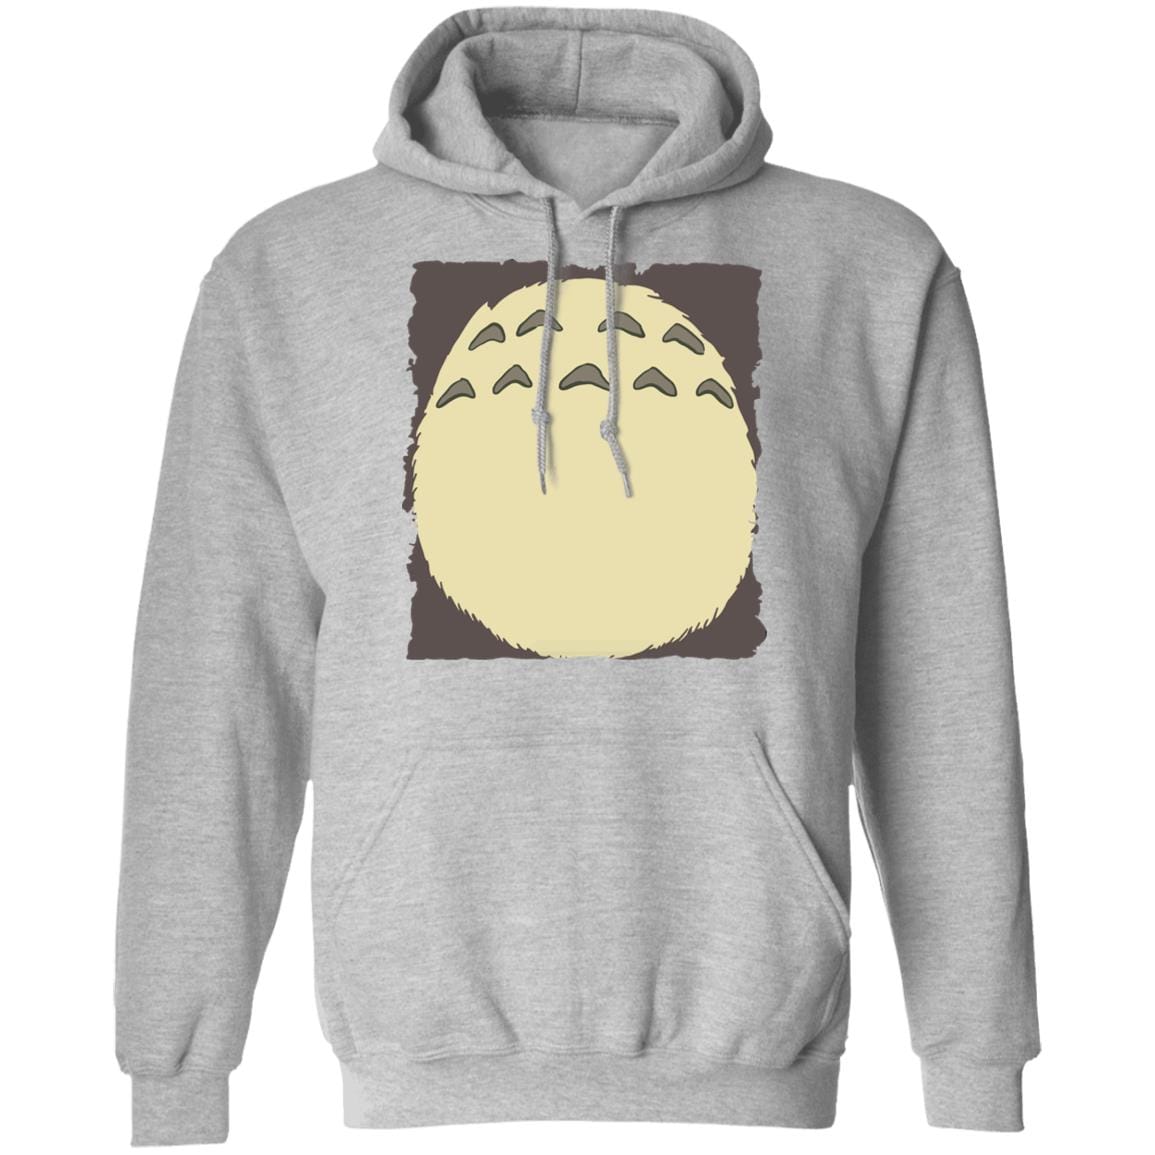 My Neighbor Totoro – Totoro Belly Hoodie